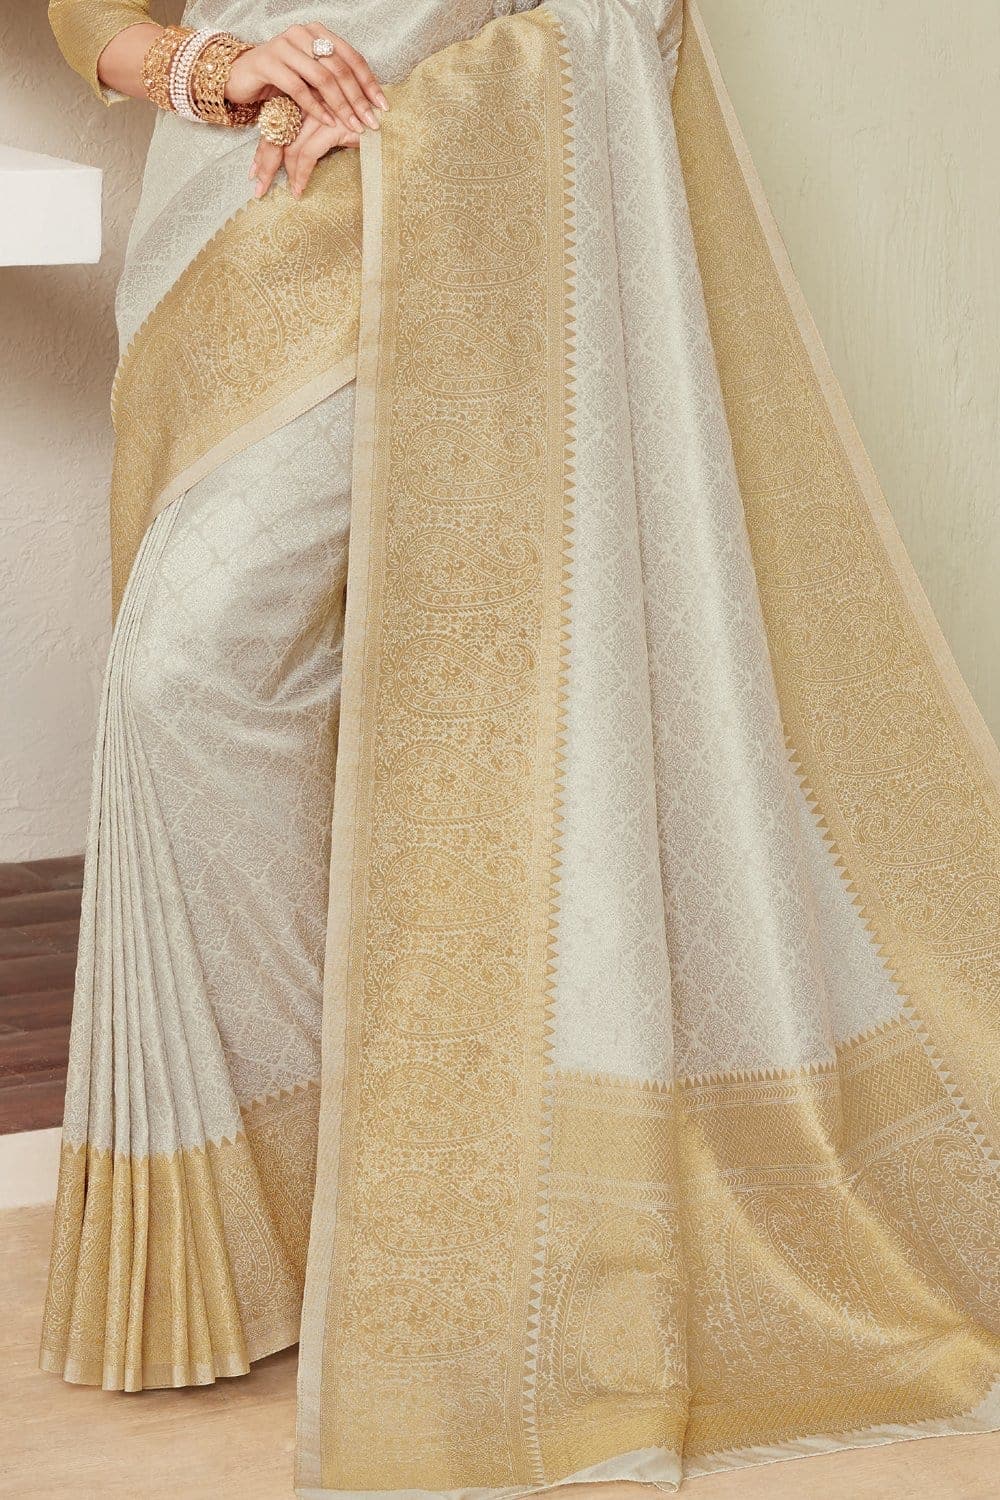 Kanjivaram Saree White Golden Zari Woven Handcrafted Kanjivaram Saree saree online